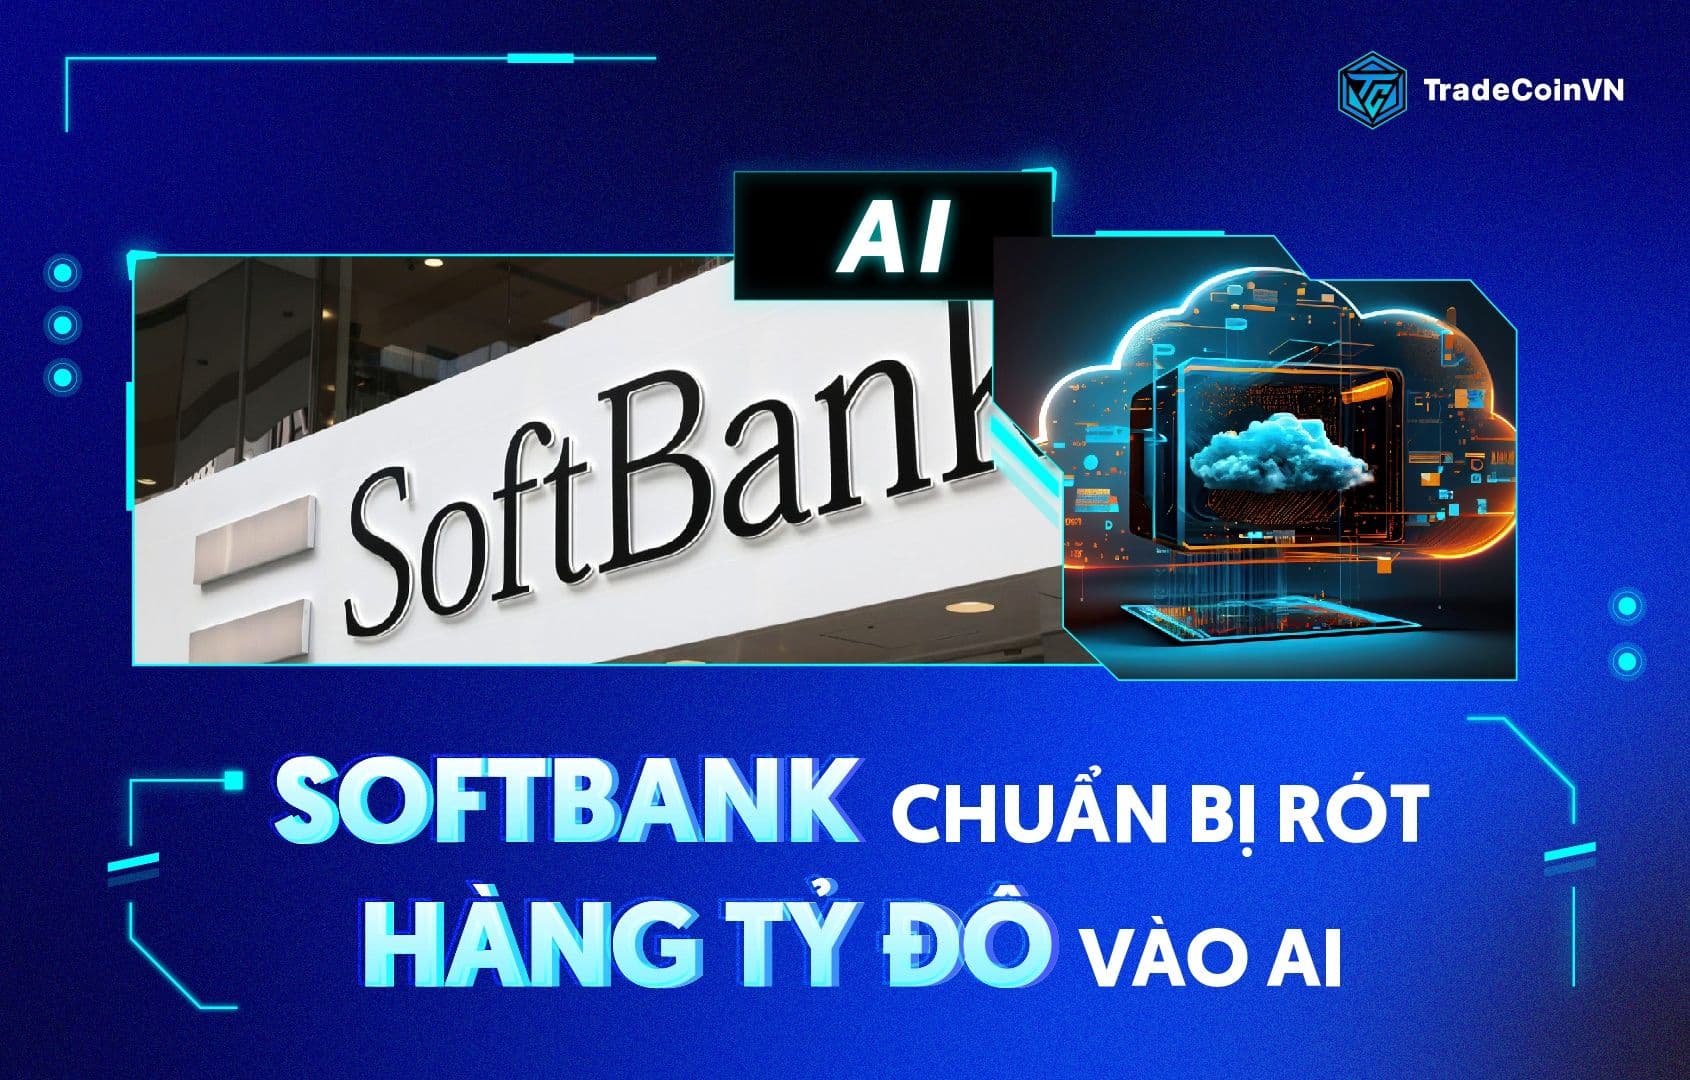 SoftBank chuẩn bị rót hàng tỷ đô vào AI sau khi tạm ngưng đầu tư vào Crypto